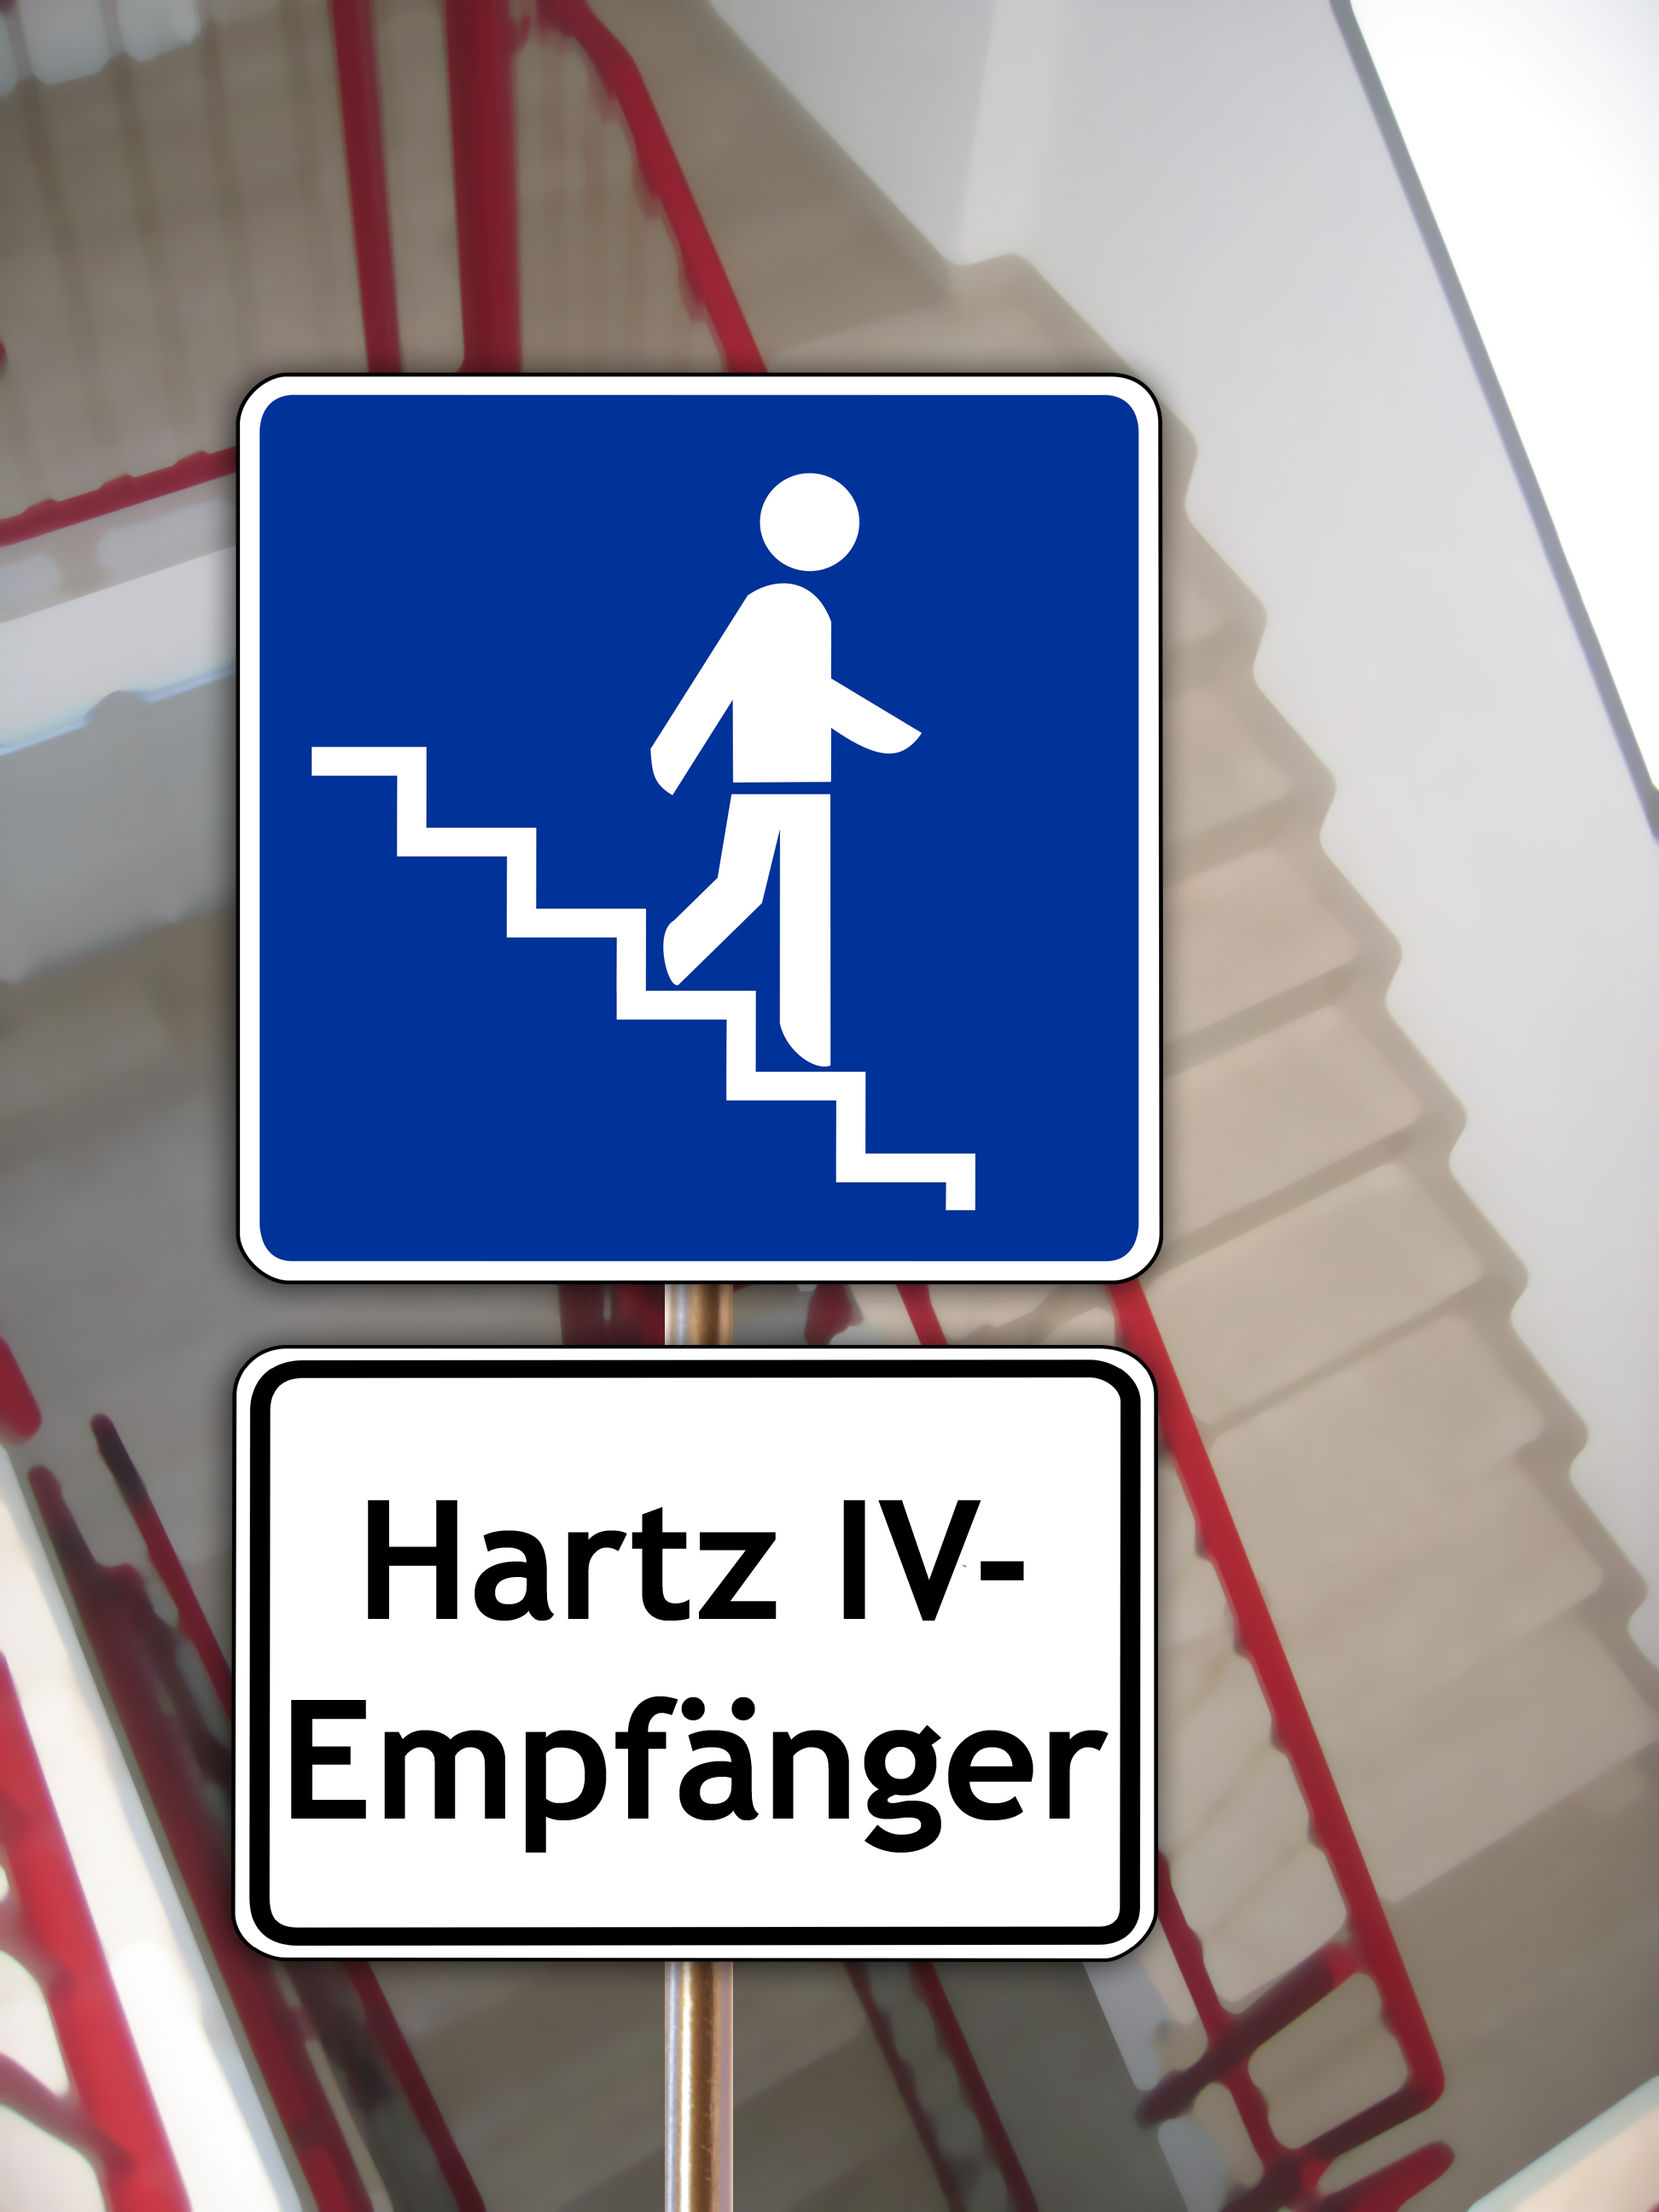 Hartz-IV-Empfänger erreichen häufig nur unsichere Jobs